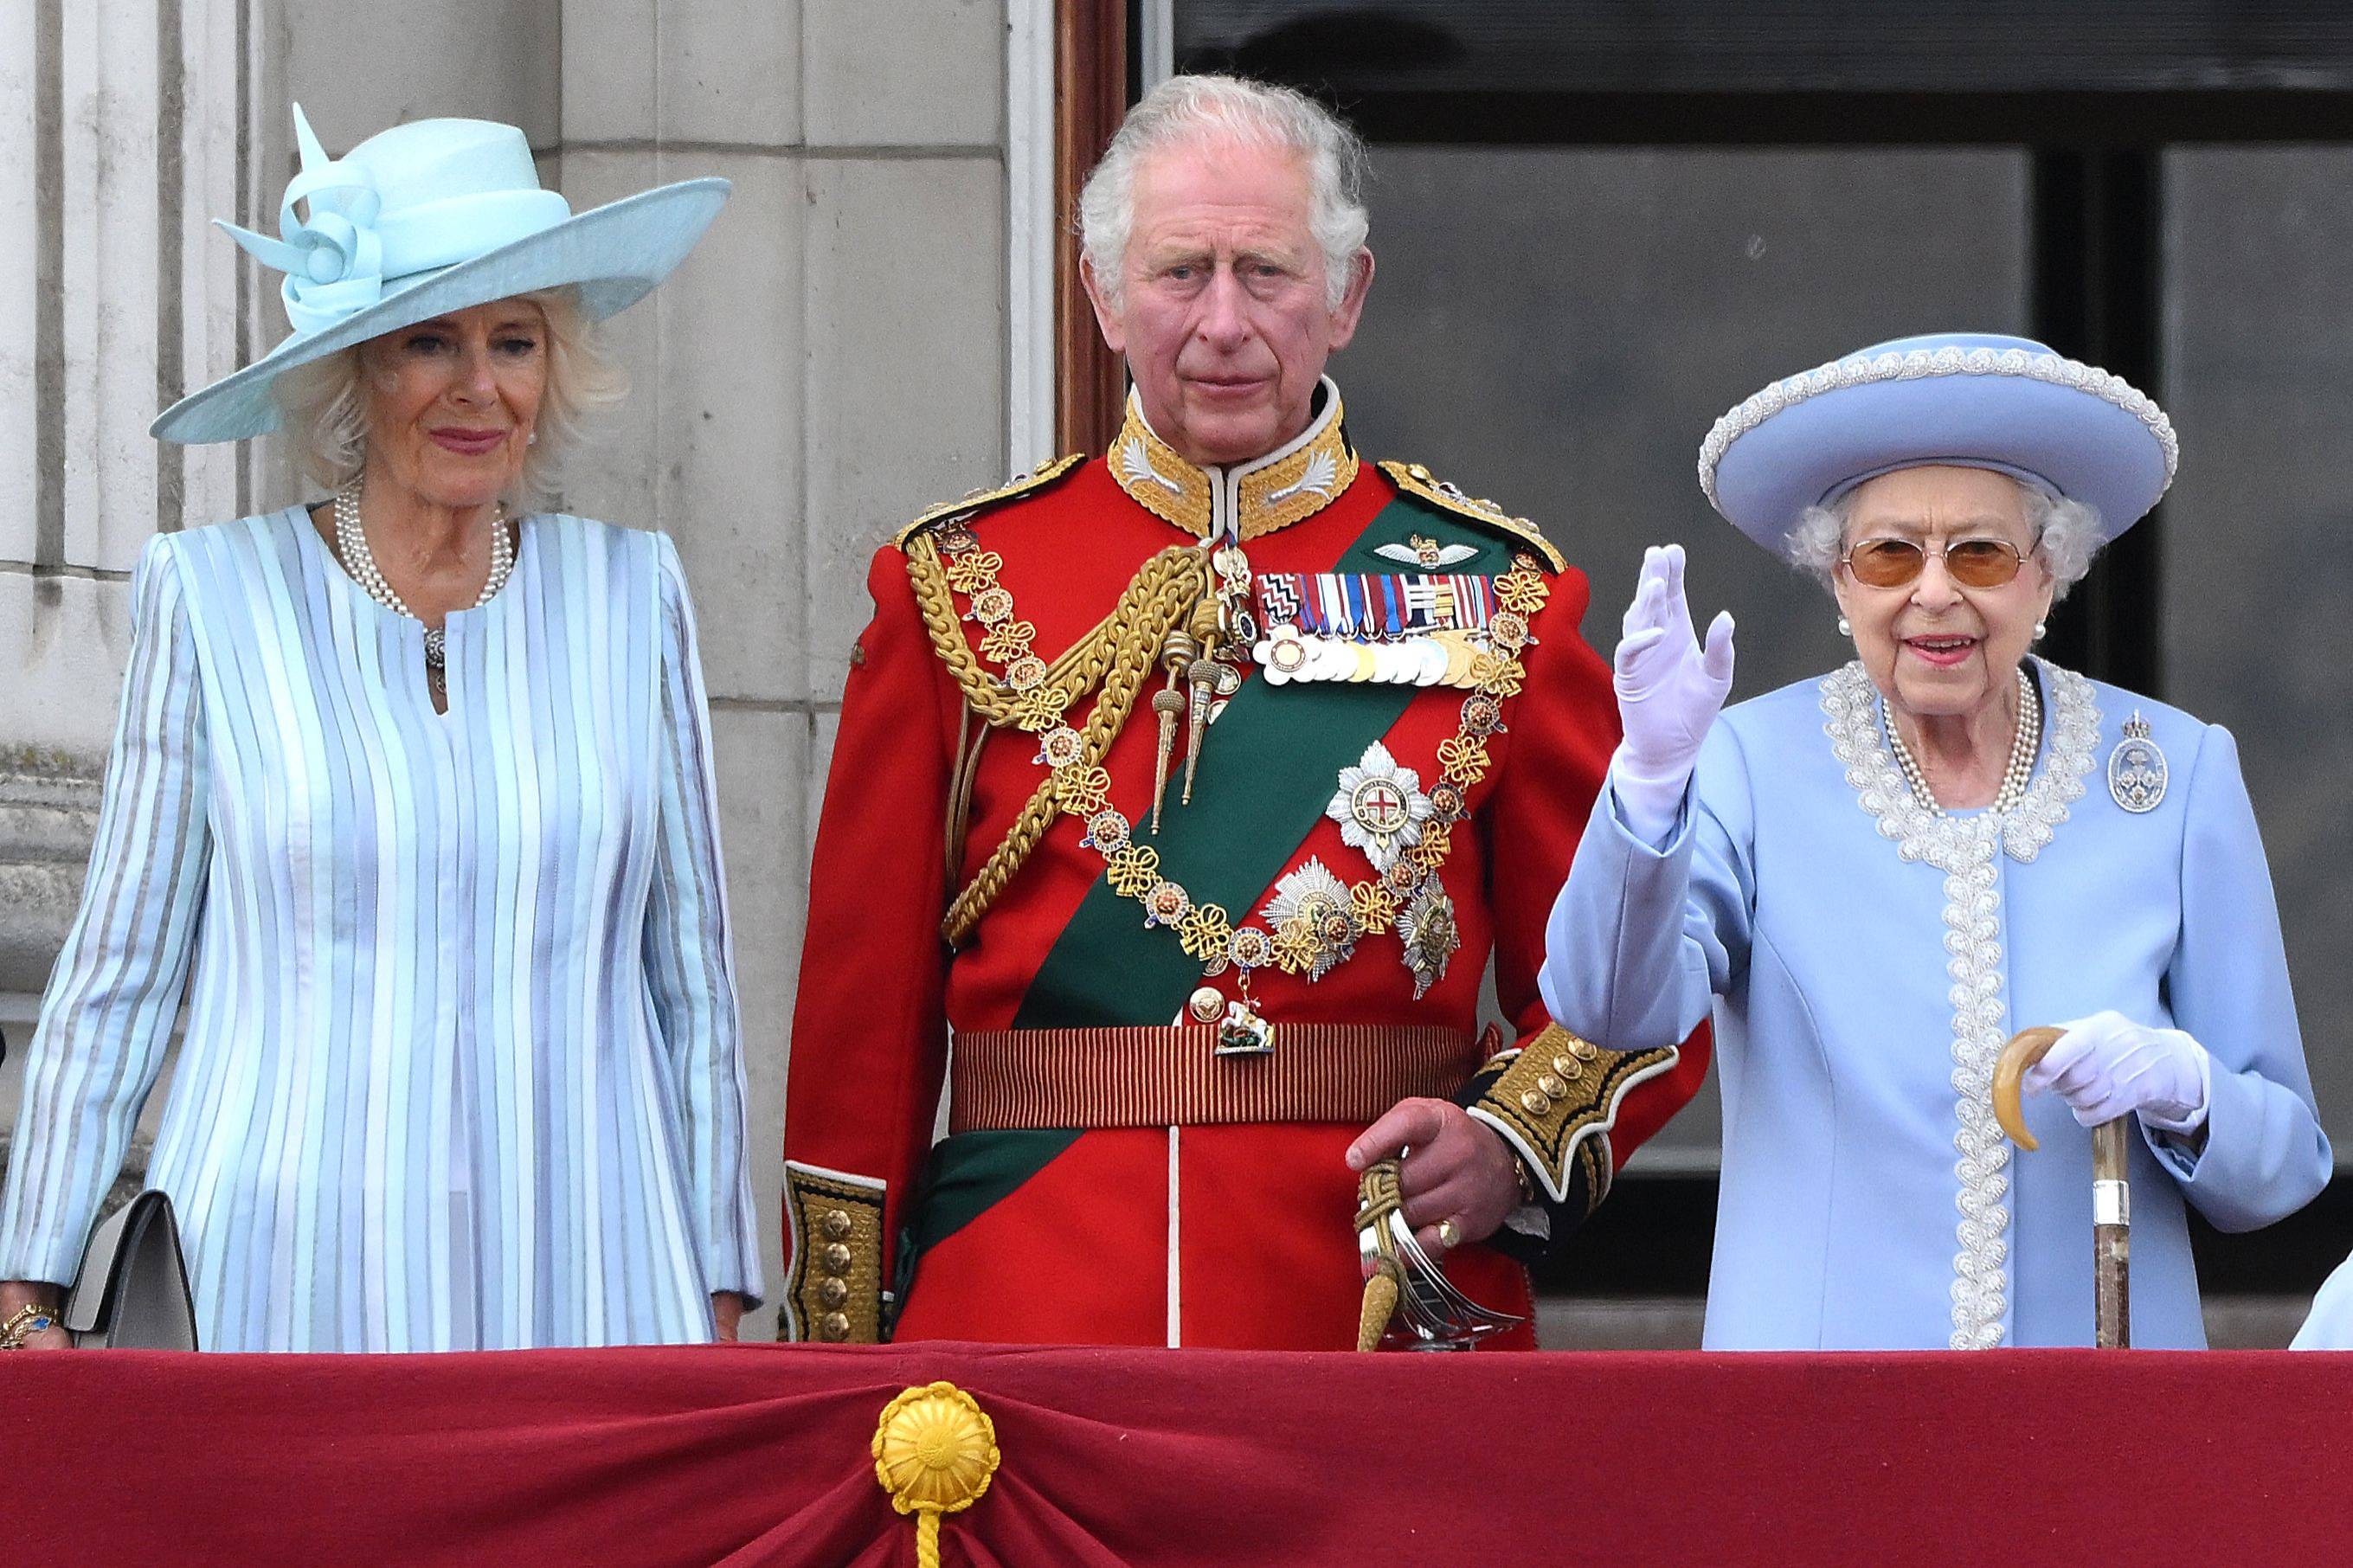 Britains queen has had far more triumphs than failures